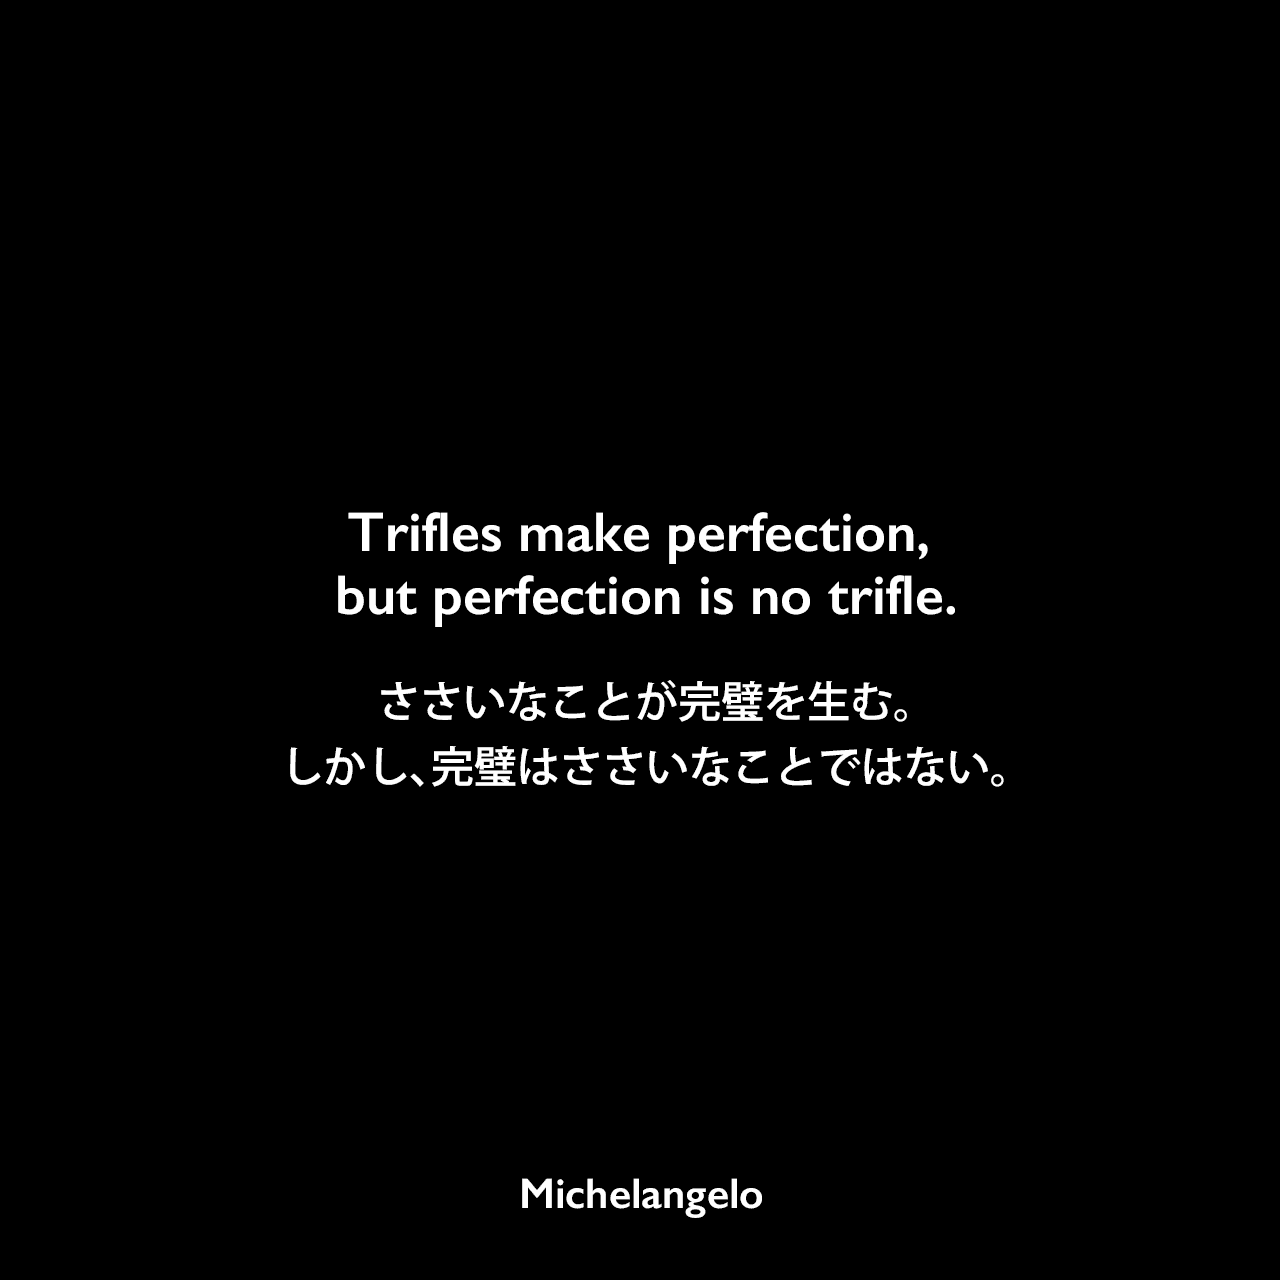 Trifles make perfection, but perfection is no trifle.ささいなことが完璧を生む。しかし、完璧はささいなことではない。Michelangelo